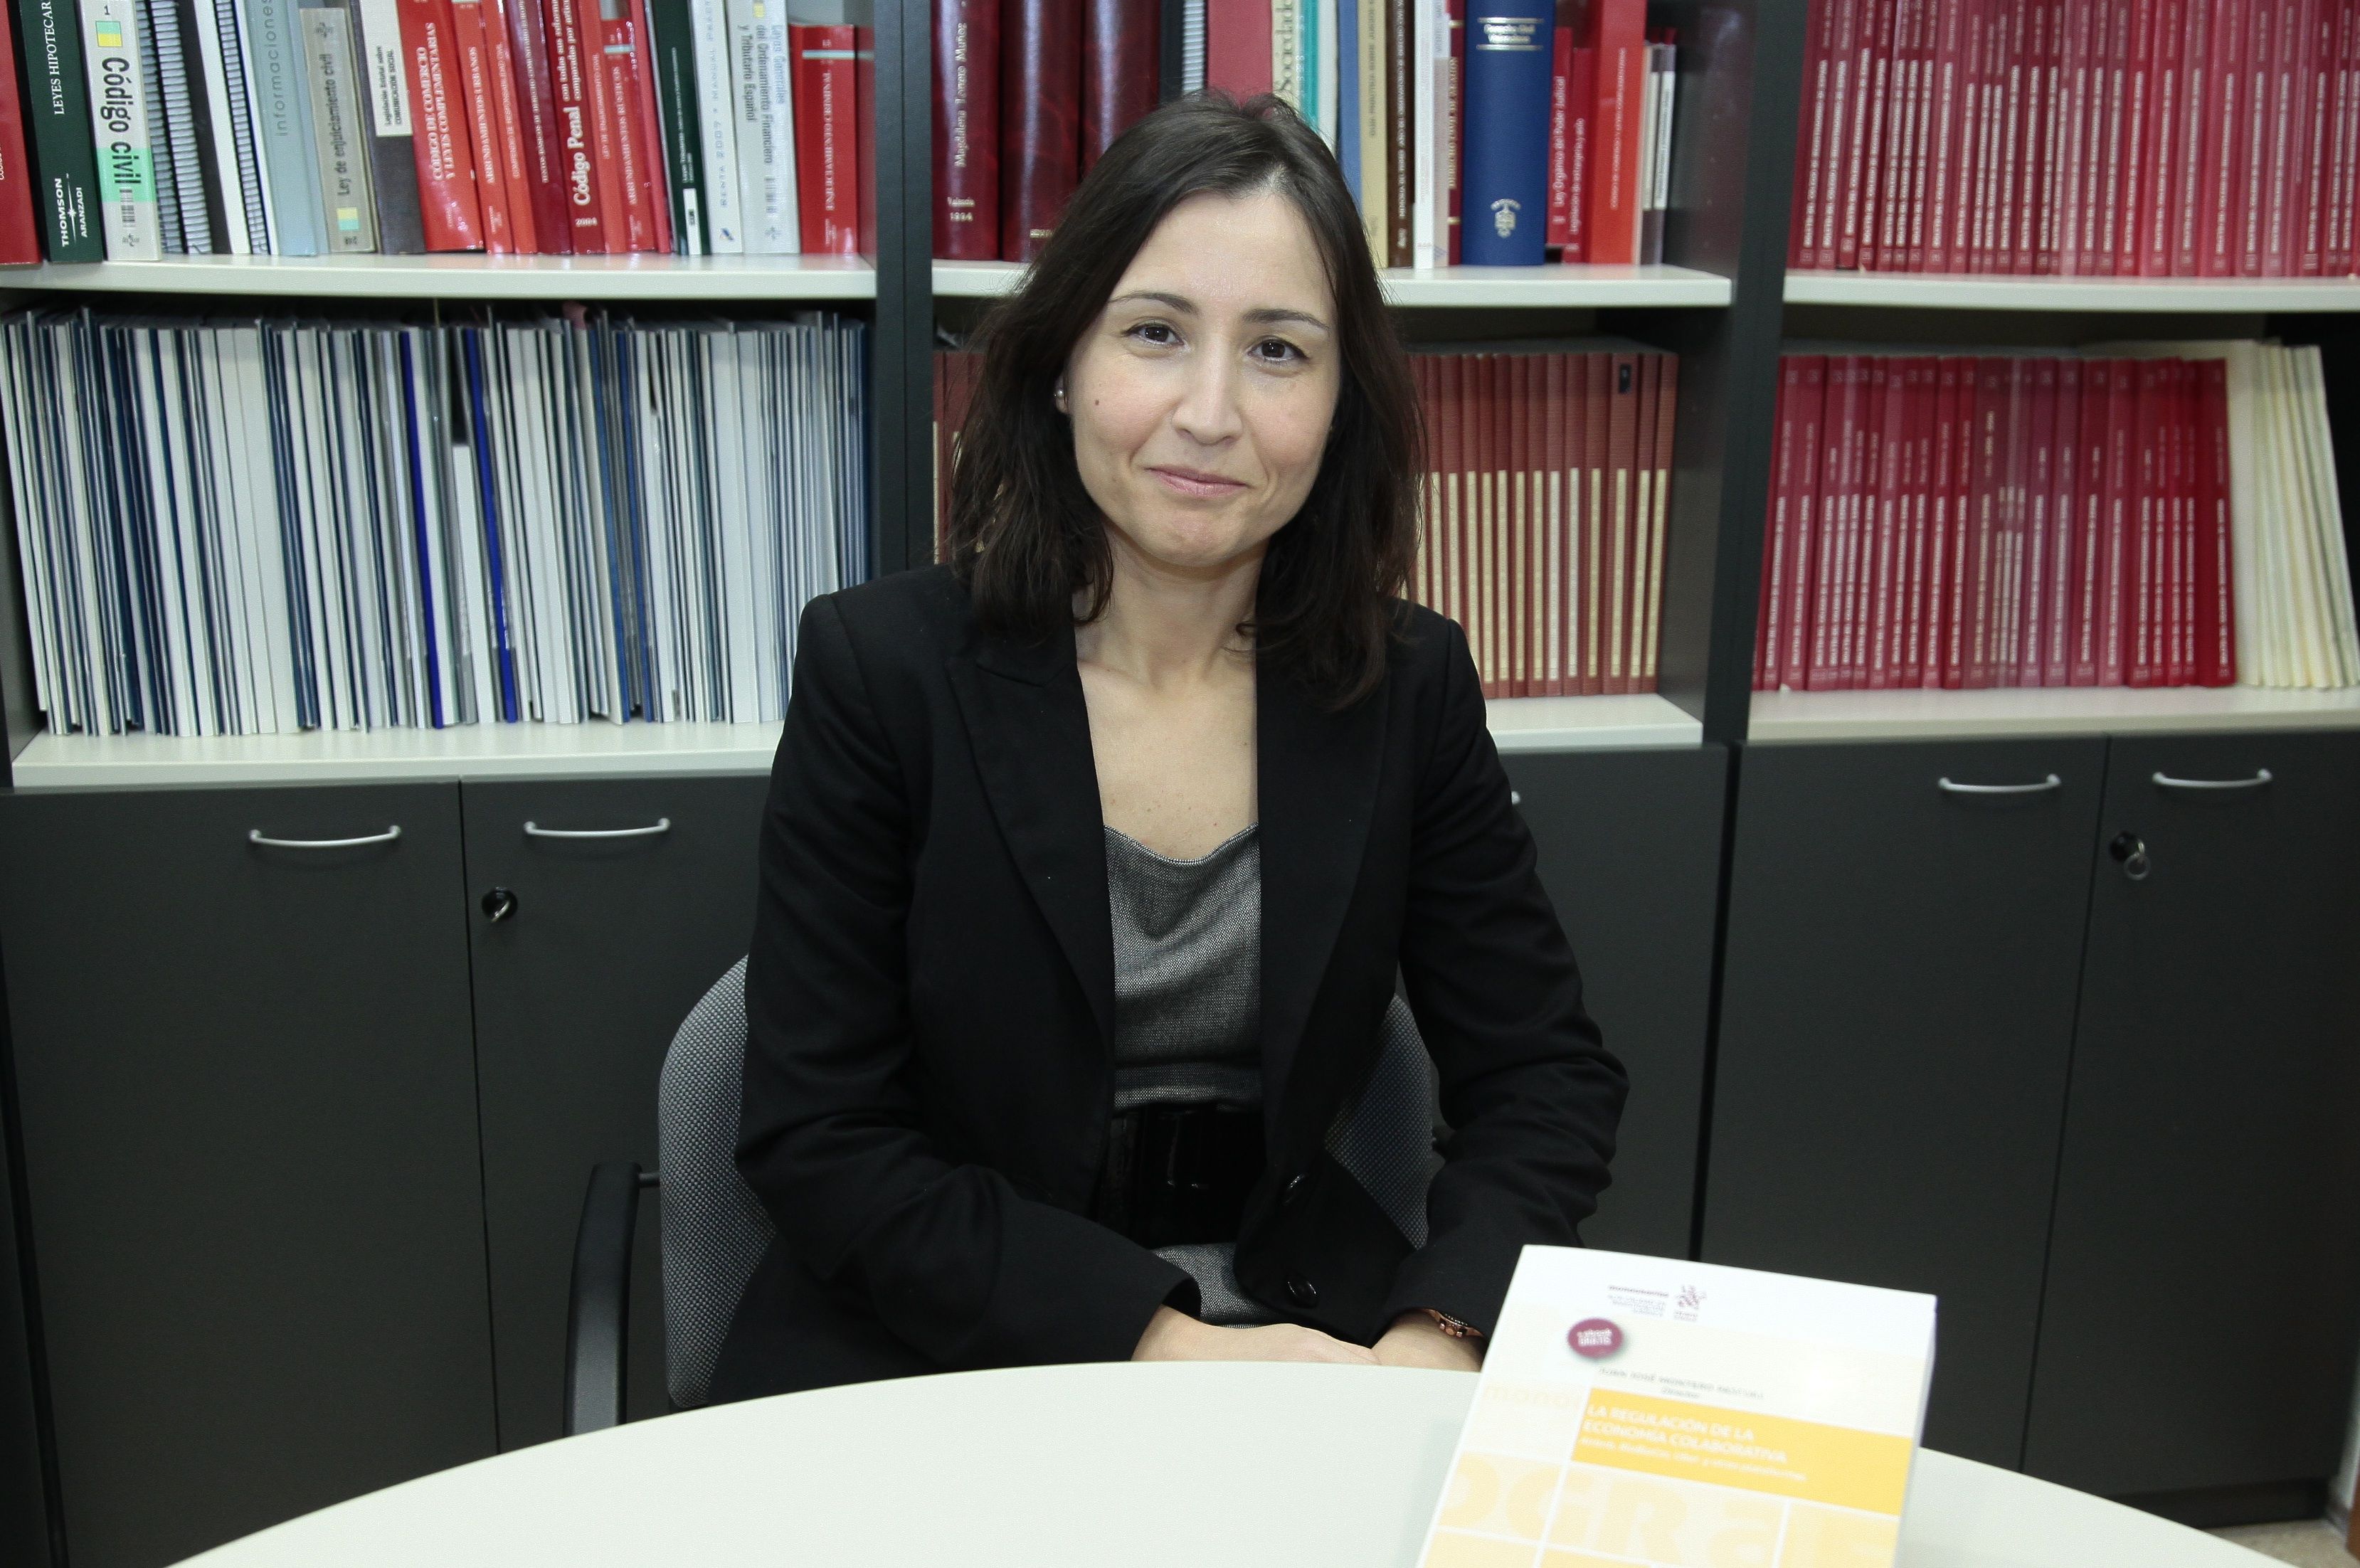 La profesora titular de Derecho Mercantil de la CEU-UCH Isabel Rodríguez, coautora del libro “La regulación de la economía colaborativa”.